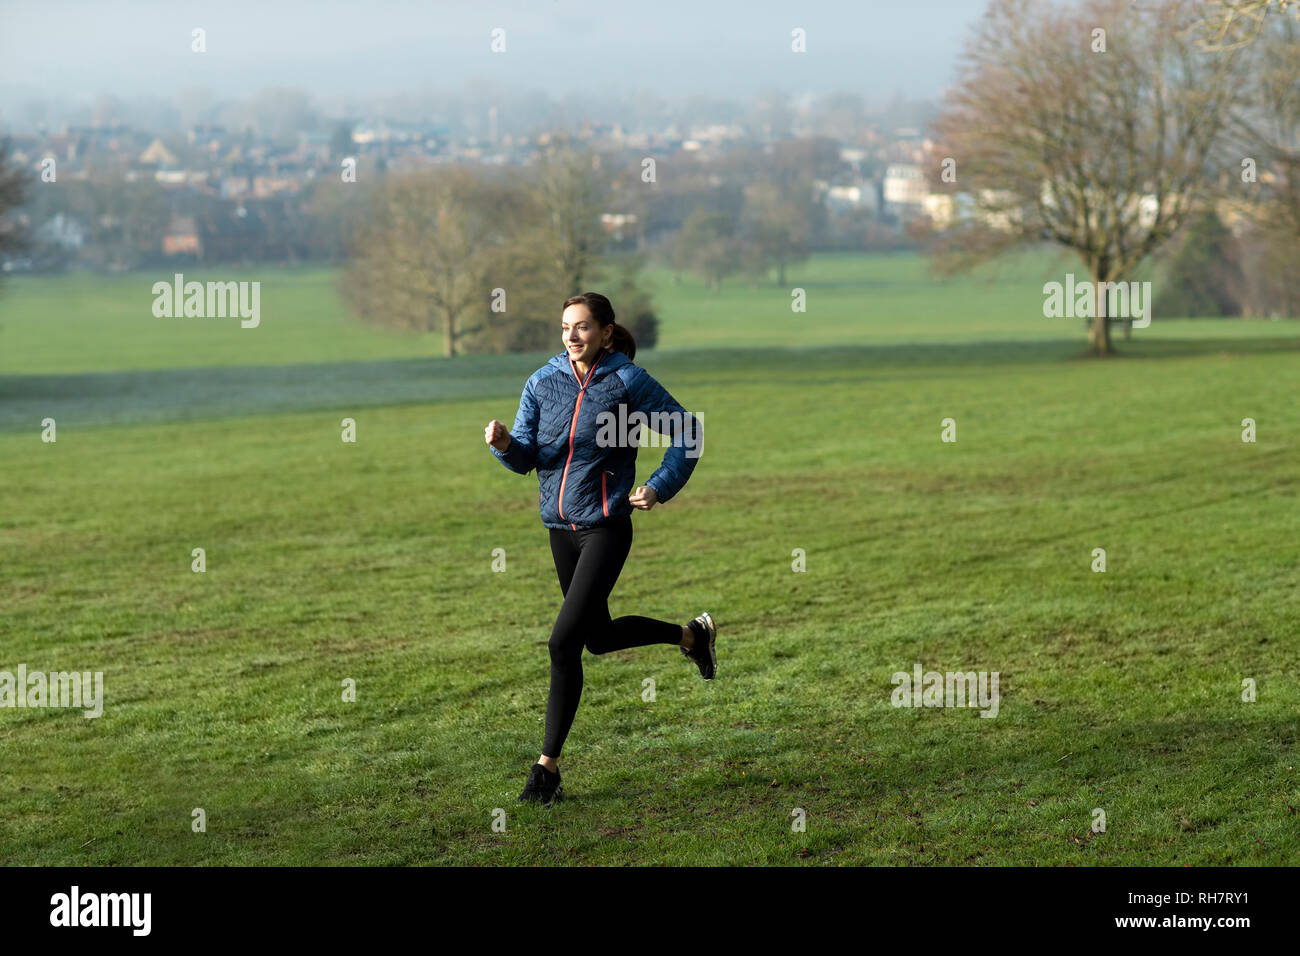 Mujer en invierno a primera hora de la mañana recorren Park mantenerse en forma haciendo ejercicio Foto de stock